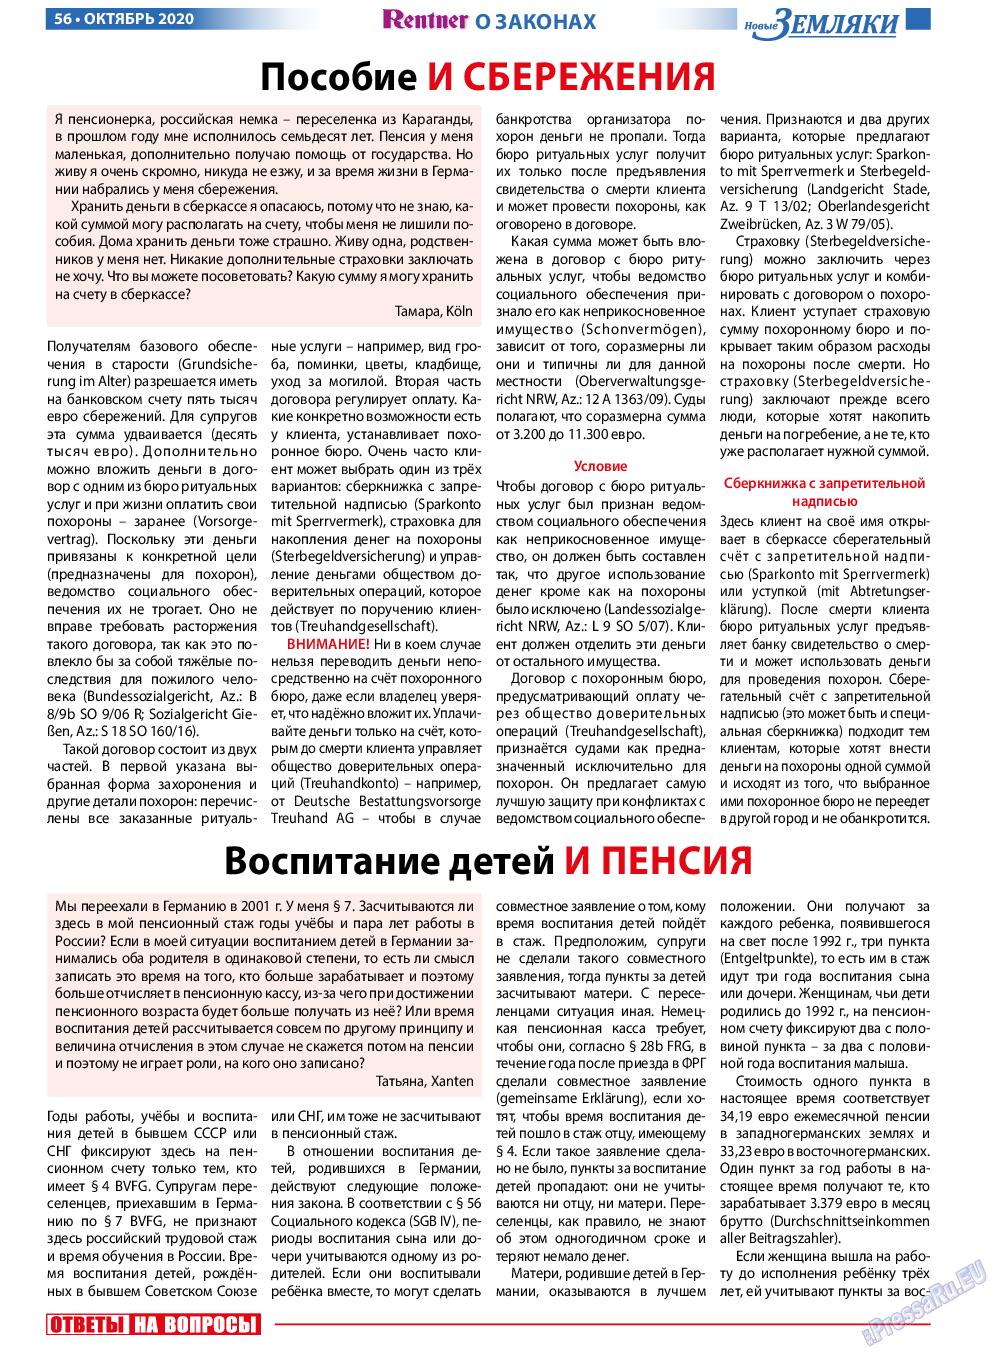 Новые Земляки, газета. 2020 №10 стр.56